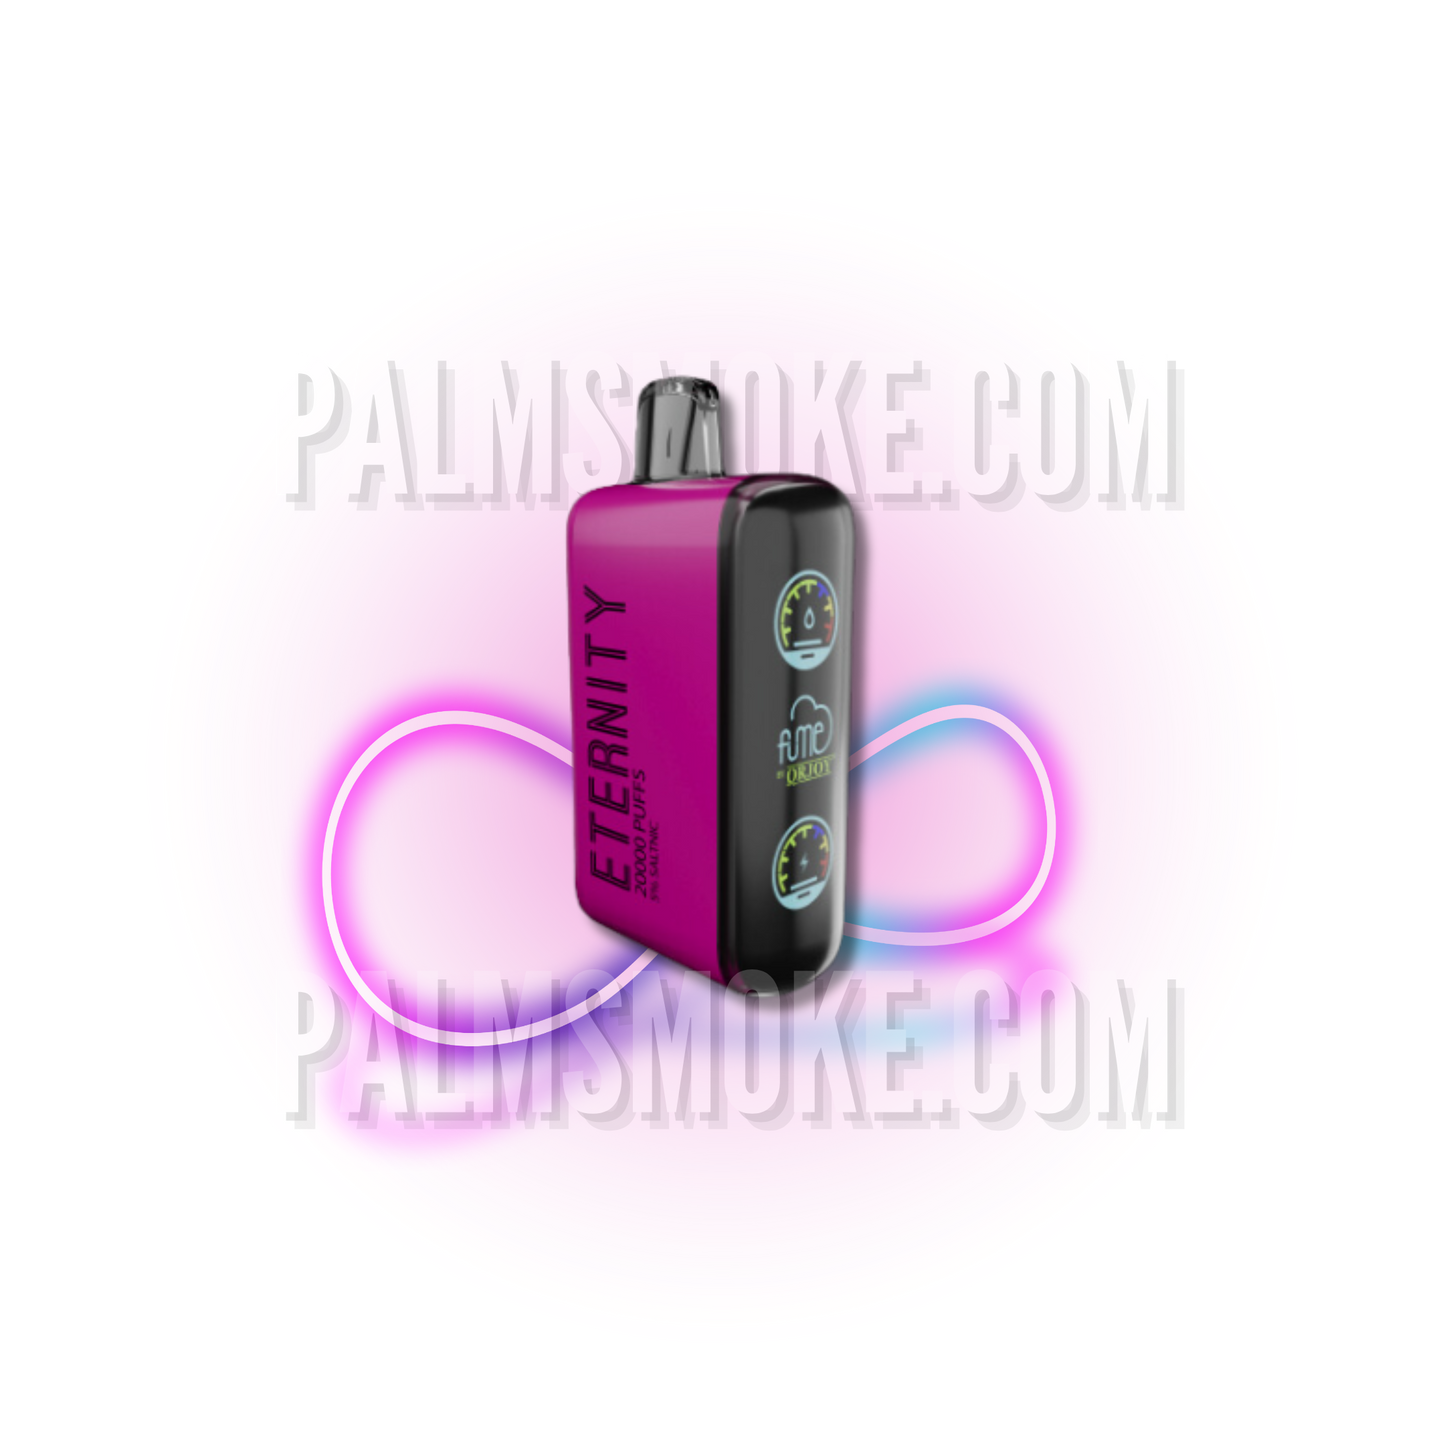 FUME ETERNITY 20.000 PUFFS STRAWBERRY KIWI APRICOT🌴 PALMSMOKE.COM